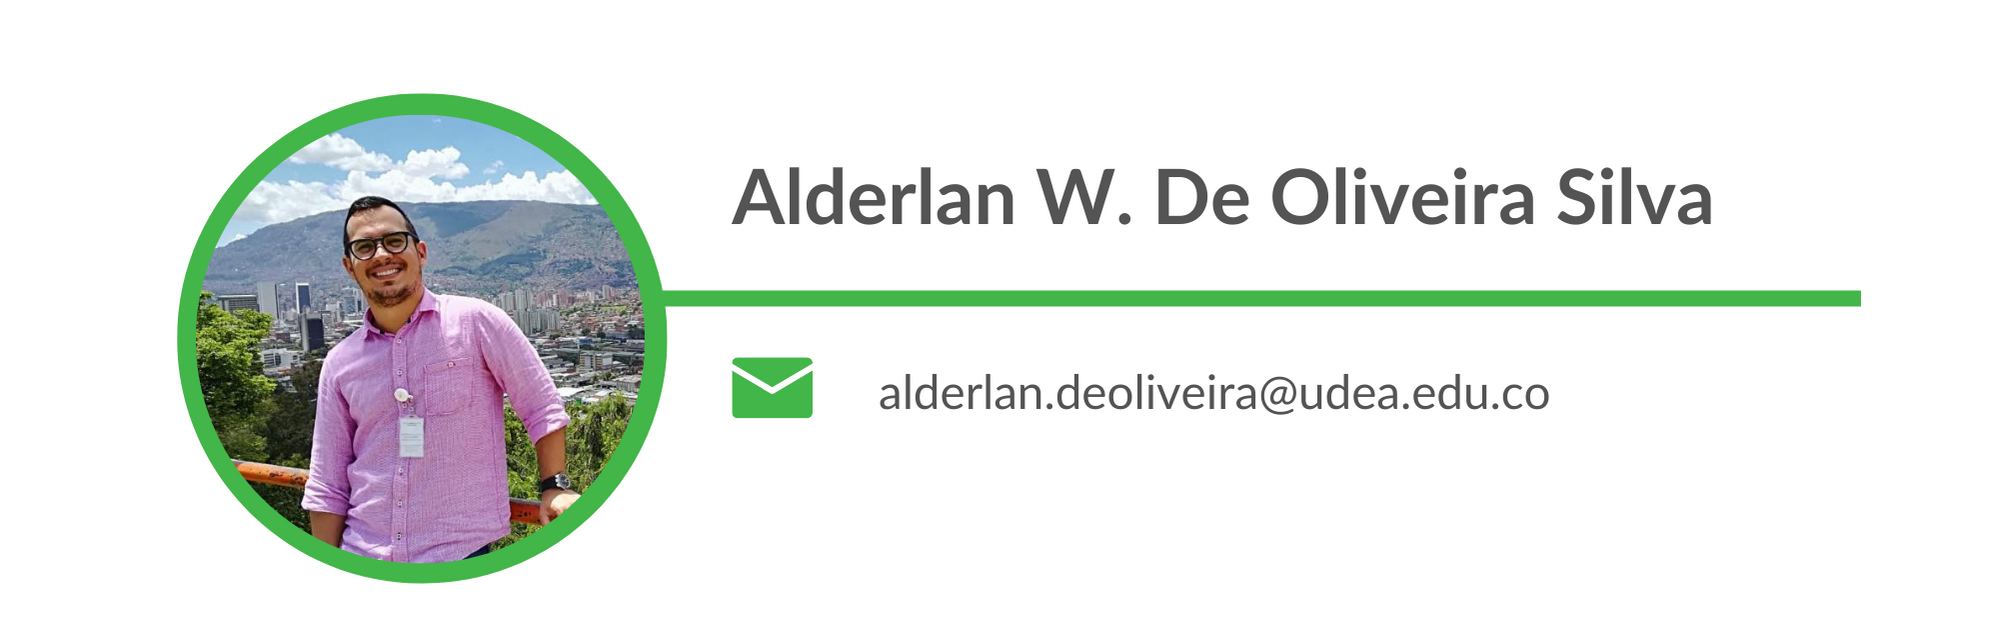 Alderlan W. De Oliveira Silva  Email: alderlan.deoliveira@udea.edu.co